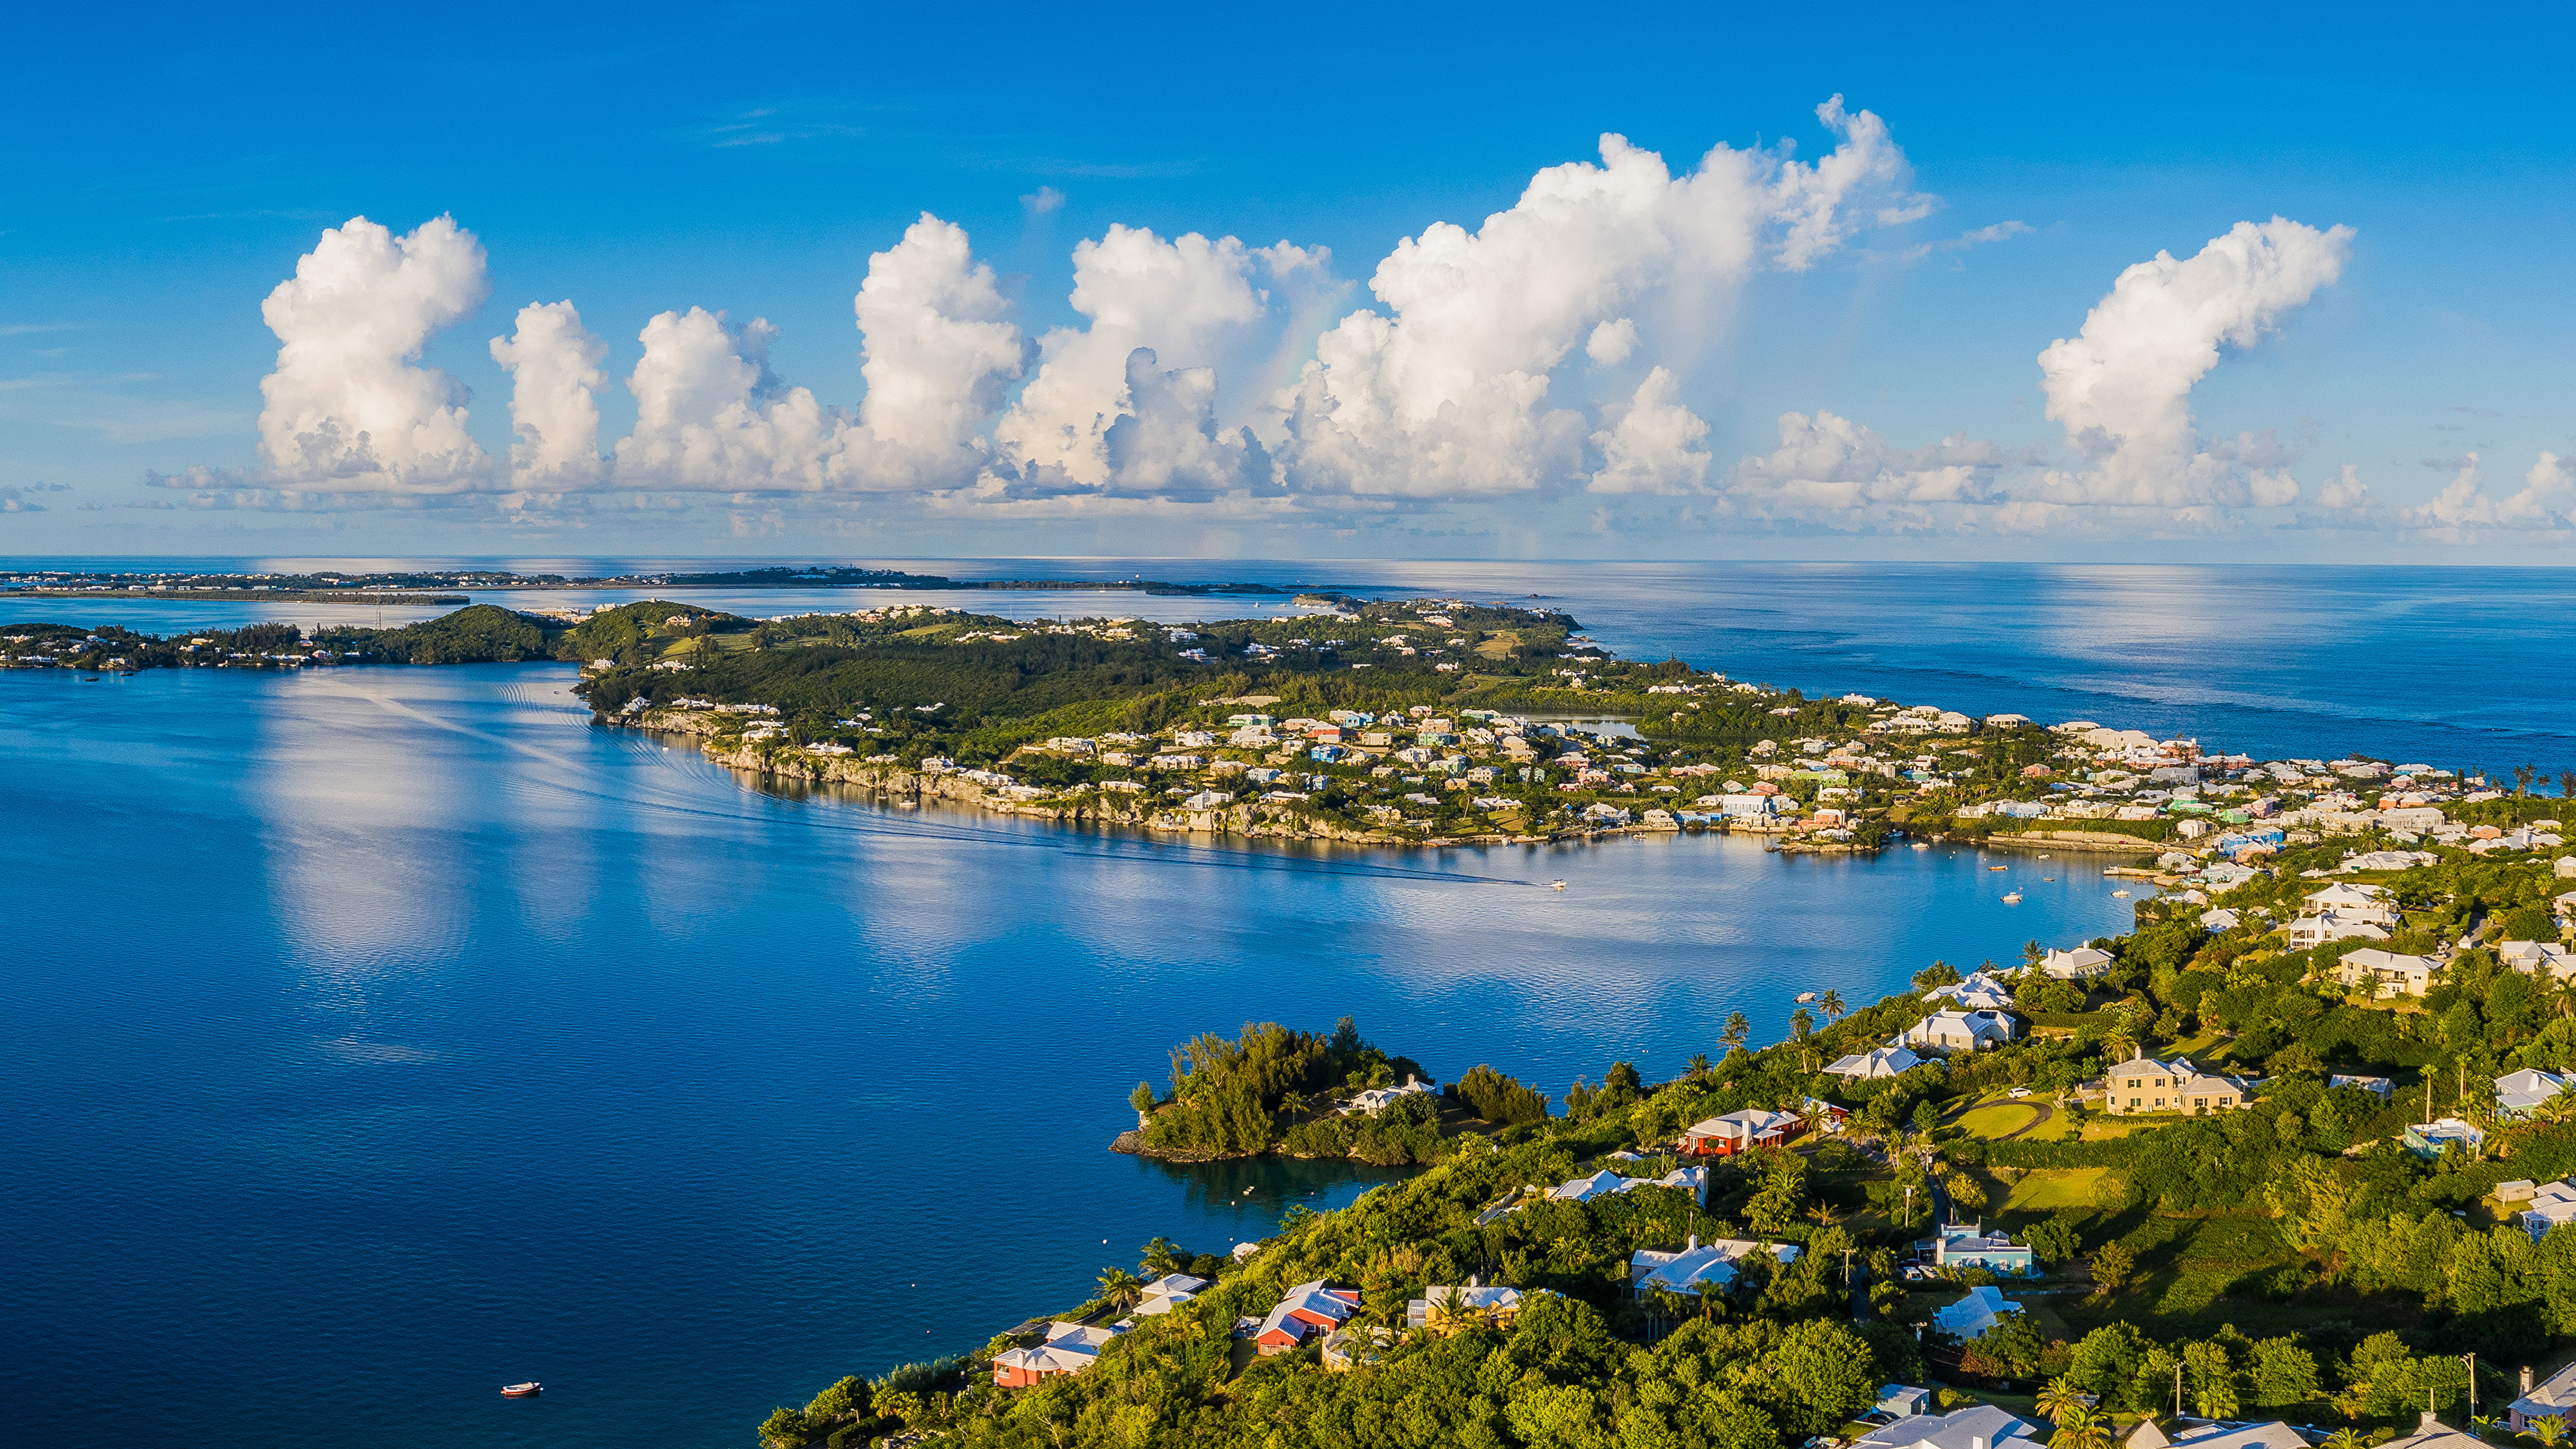 壁紙 3840x2160 イギリス 住宅 海岸 Island In Harrington Sound Bermuda 湾 雲 都市 ダウンロード 写真